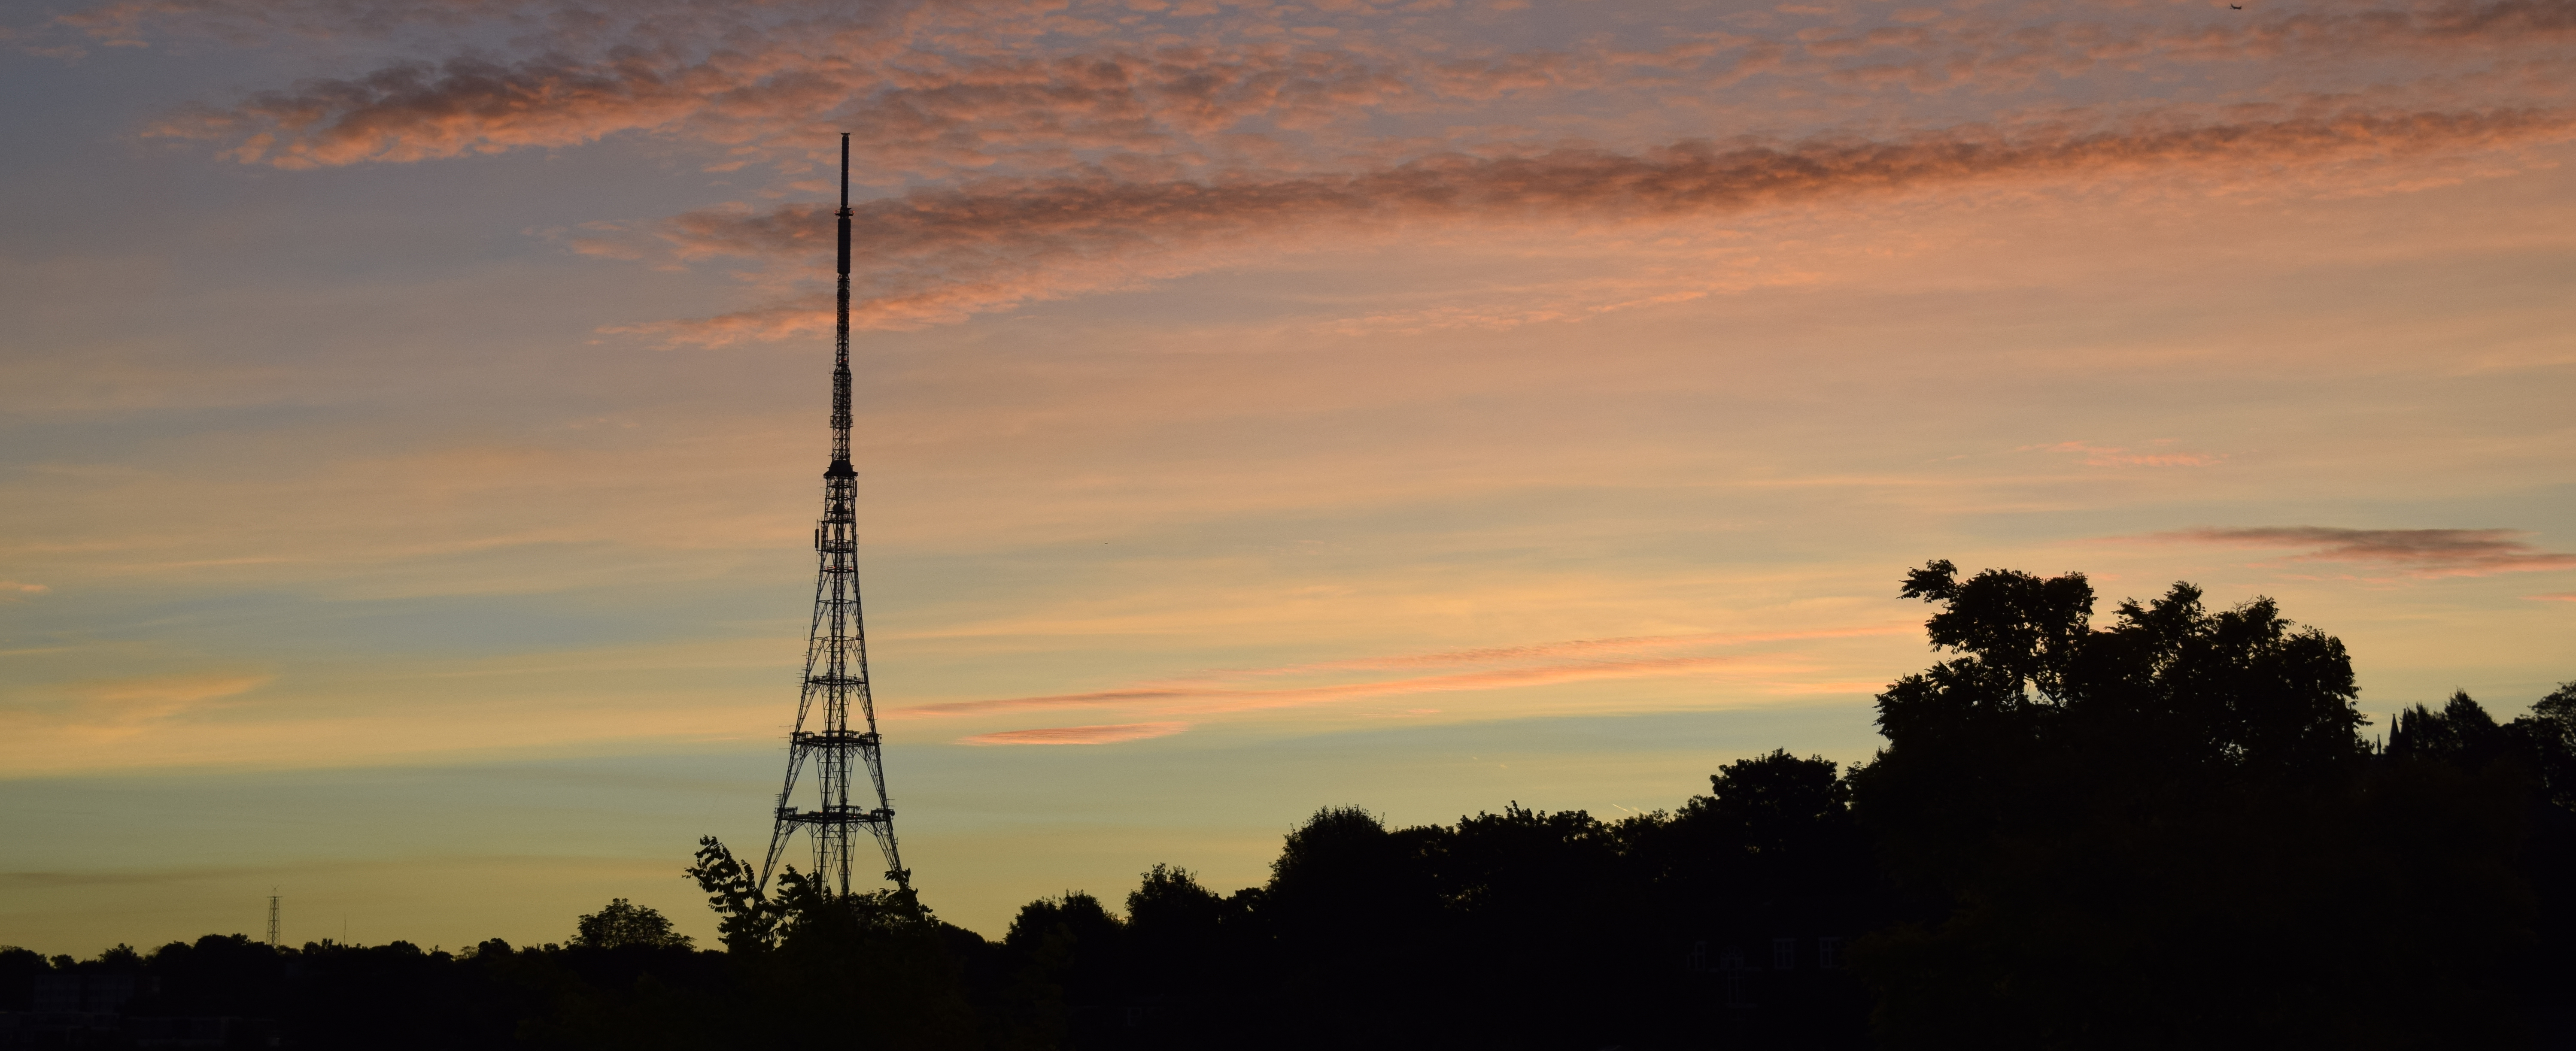 BBC Radio Tower at sunset.